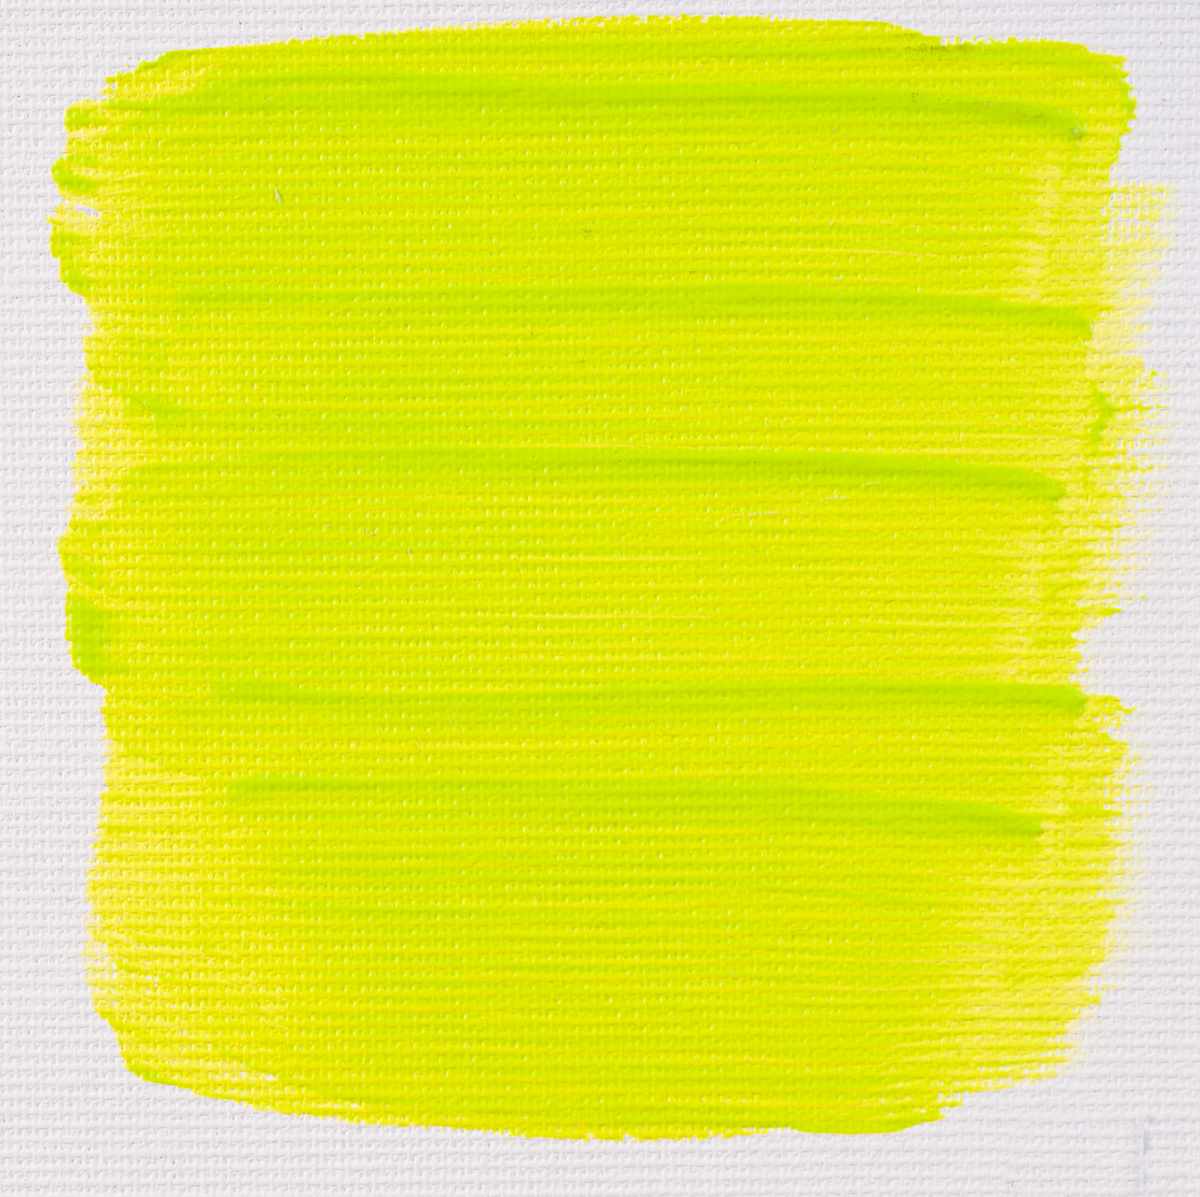 Greenish yellow